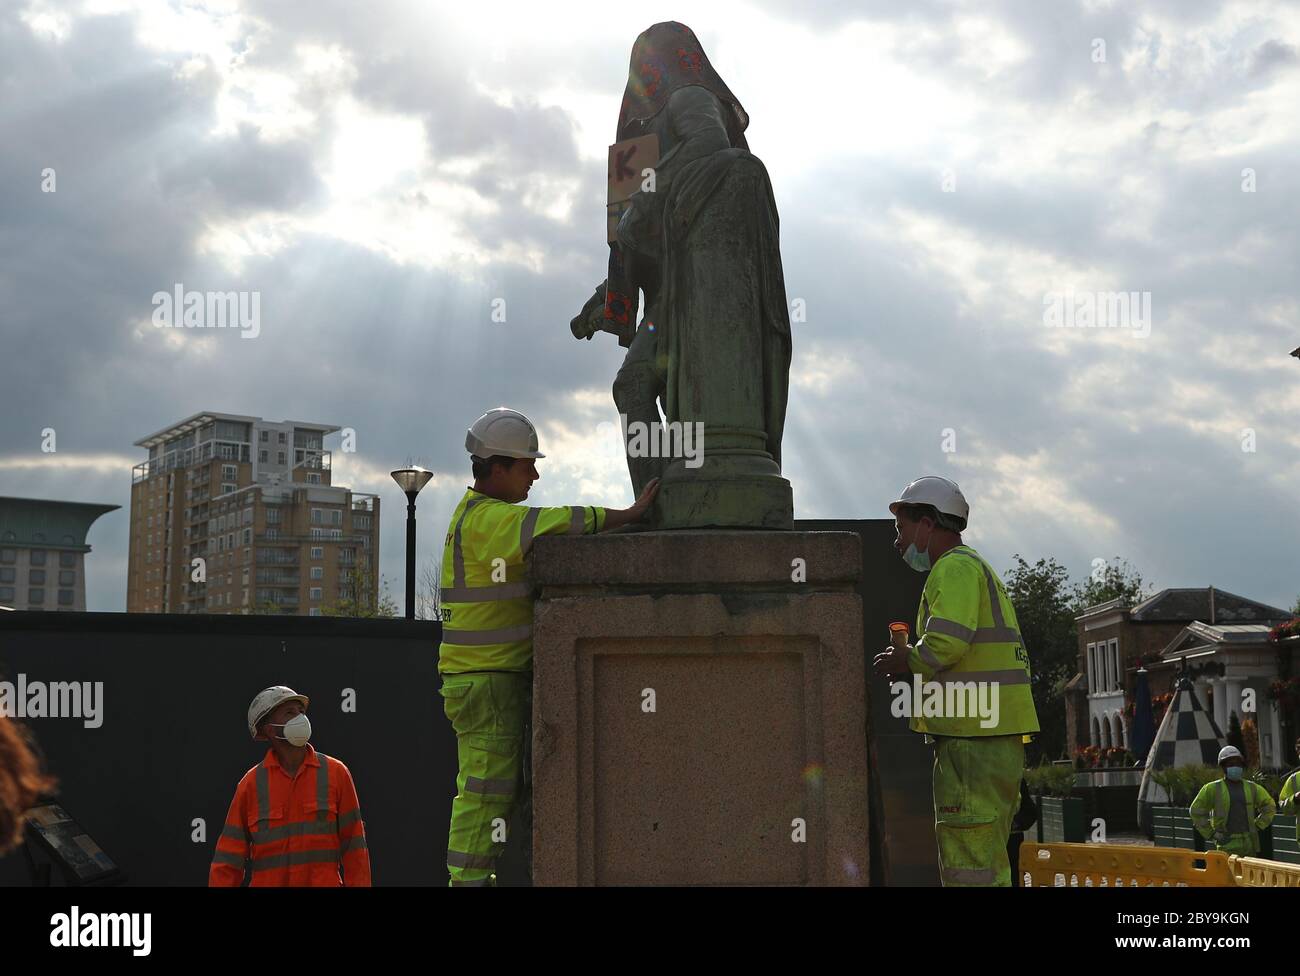 Arbeiter bereiten sich darauf vor, eine Statue des Sklavenbesitzers Robert Milligan am West India Quay, East London, abzubauen, während die Labour Councils in ganz England und Wales beginnen, Denkmäler und Statuen in ihren Städten zu überprüfen. Nach einem Protest wurden in Bristol die Statue eines Sklavenhändlers von Anti-Rassismus-Aktivisten niedergerissen. Stockfoto